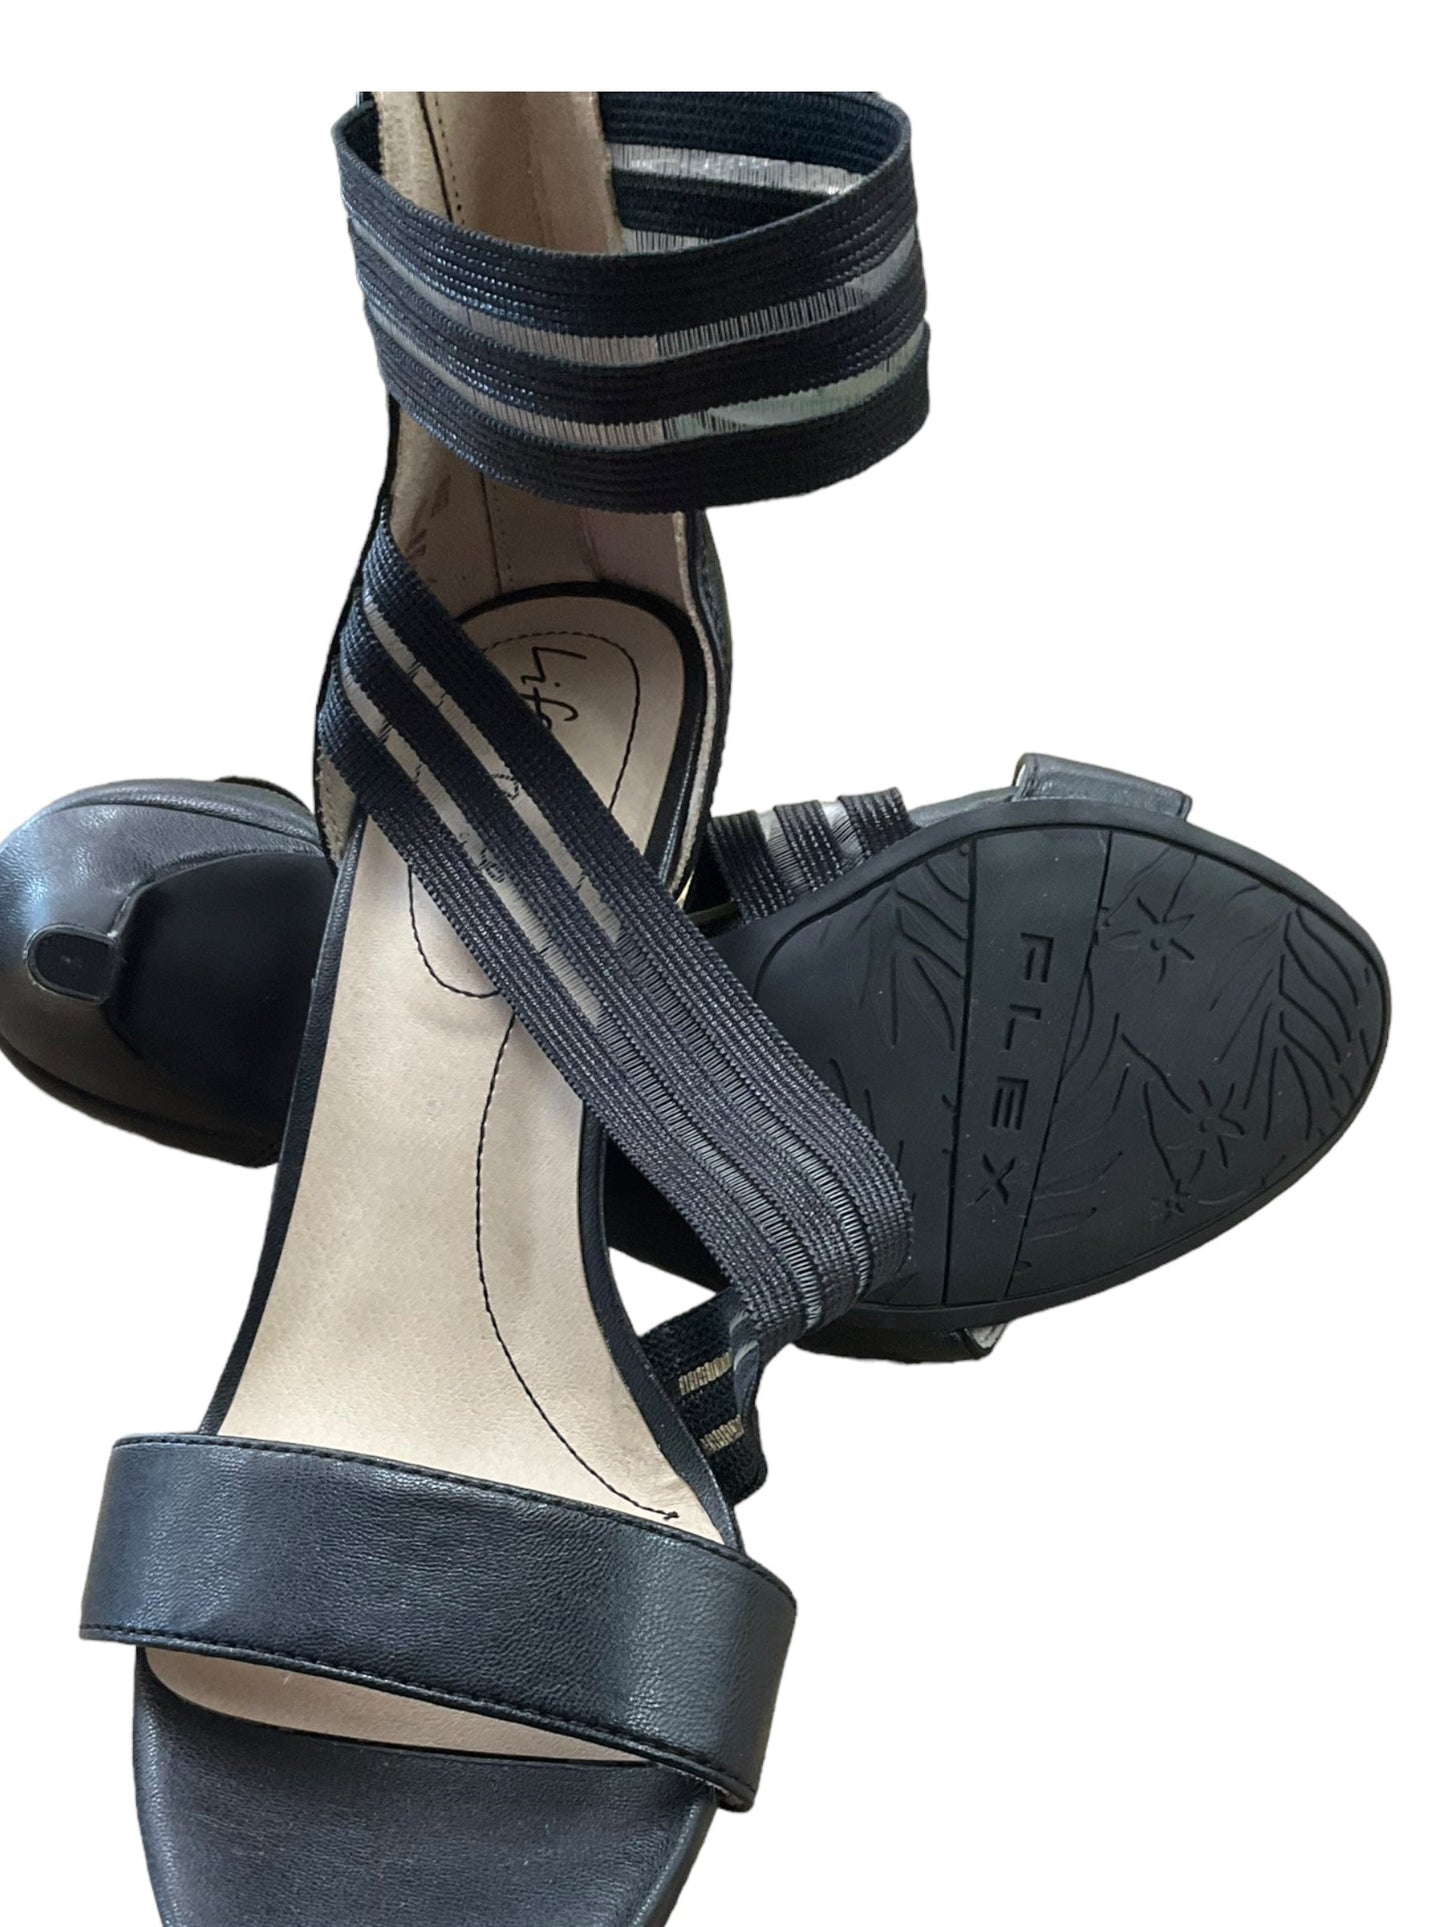 Black Sandals Heels Stiletto Life Stride, Size 9